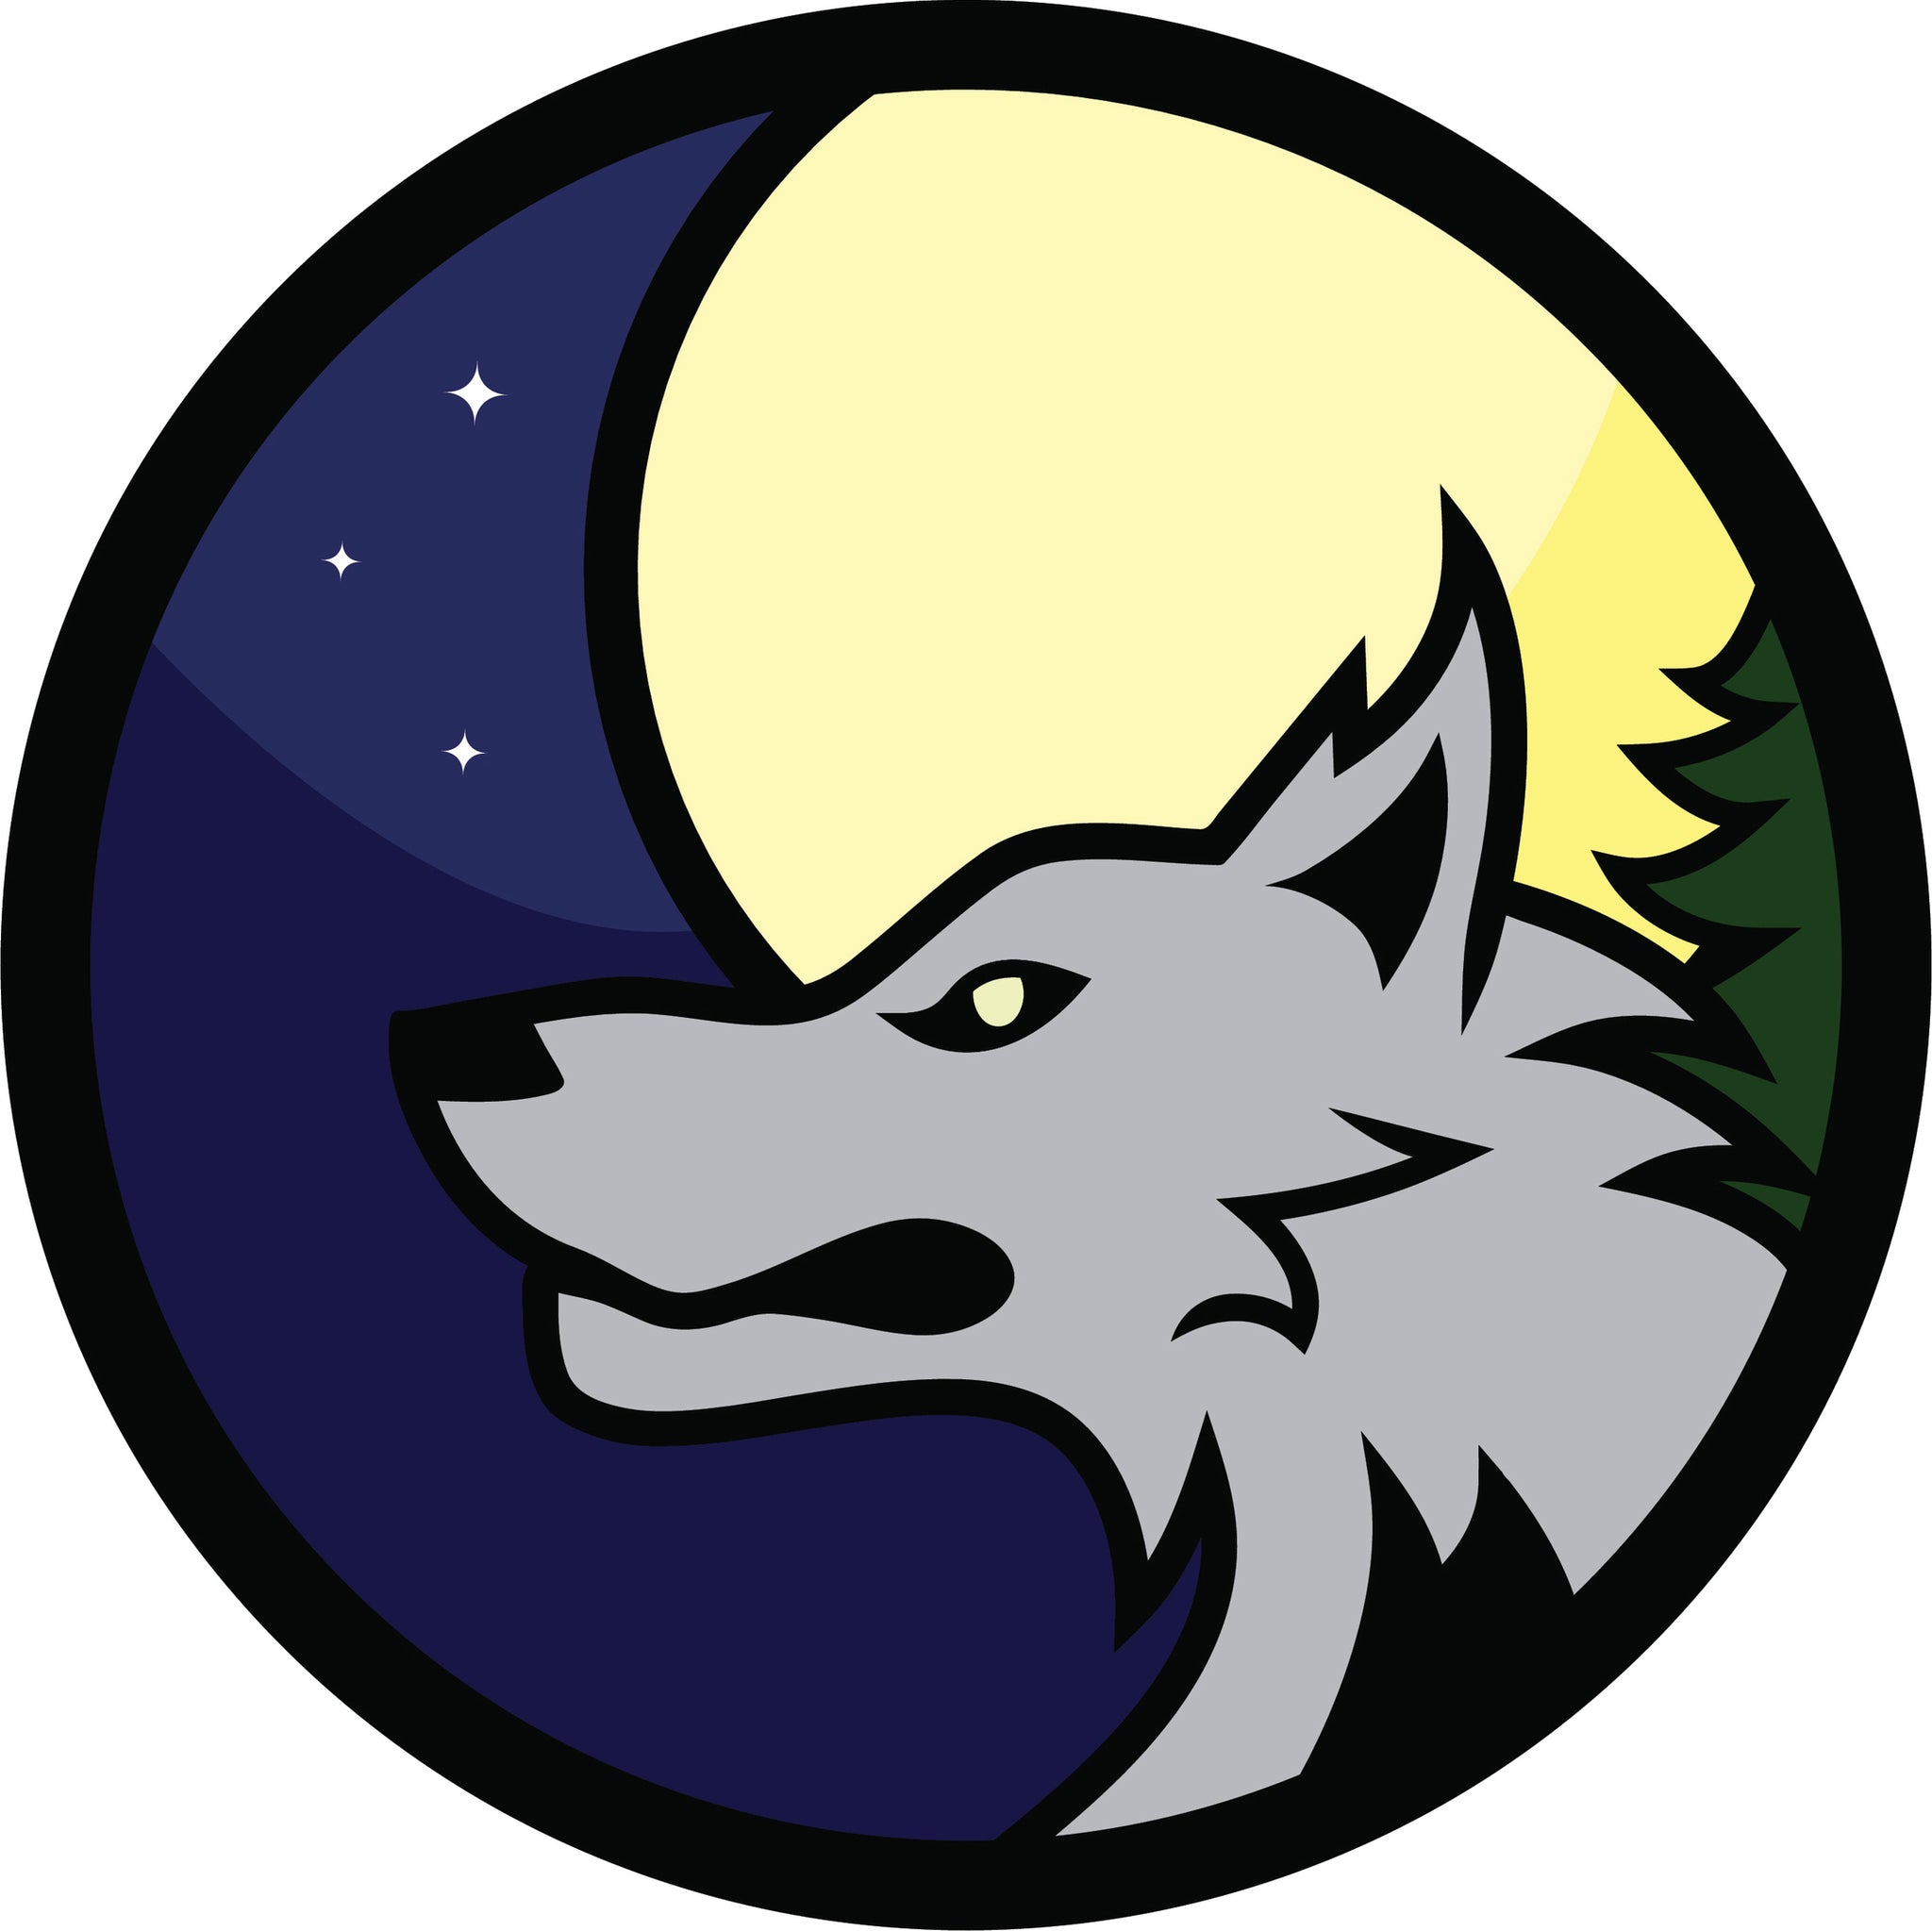 Cool Wolf in Forest Wilderness Cartoon Icon #2 Vinyl Decal Sticker